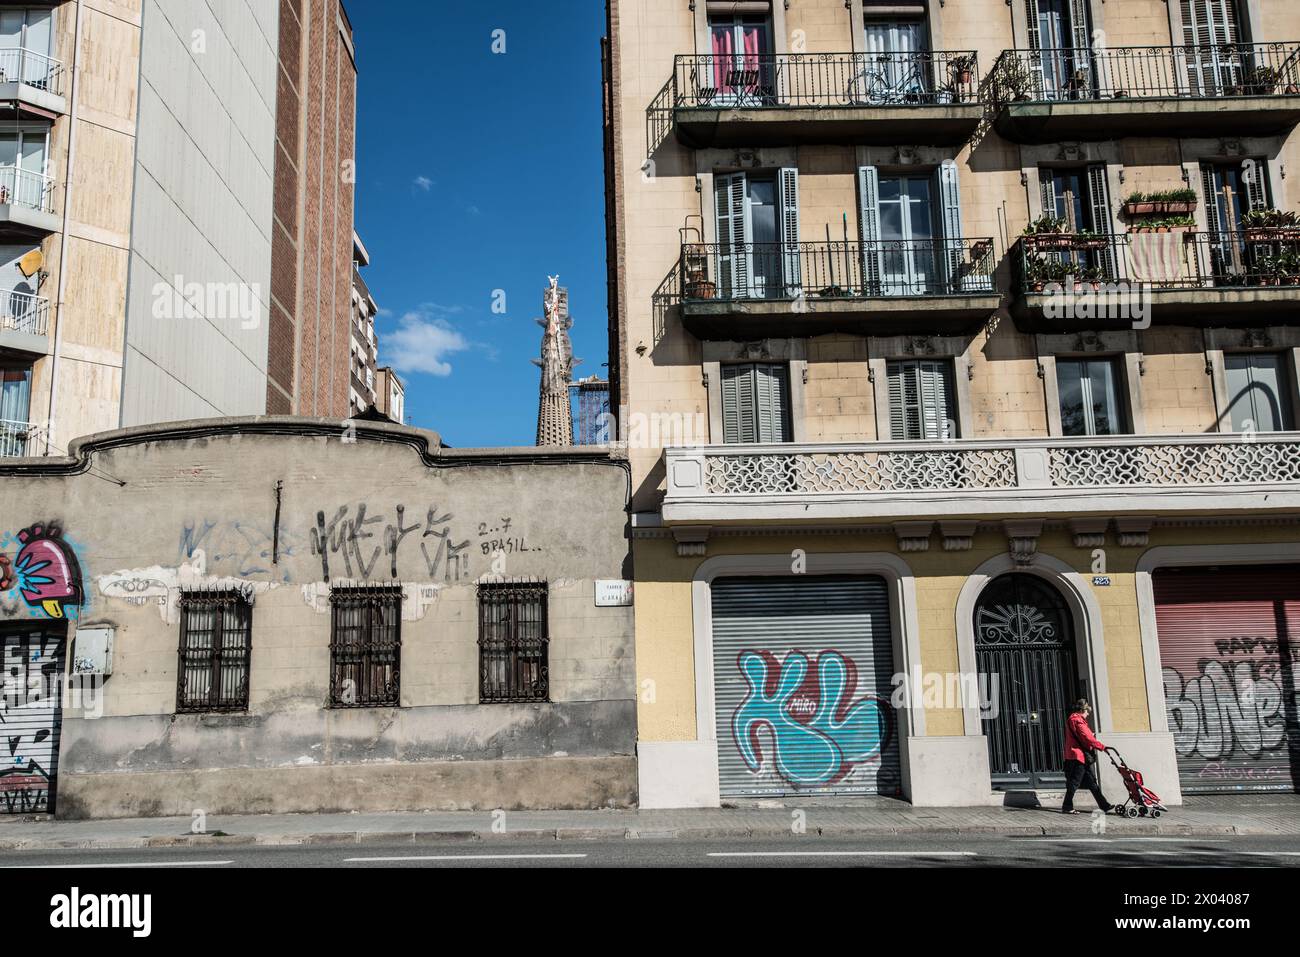 Lady en rouge pousse une poussette dans une rue de Barcelone, avec la Sagrada Familia en arrière-plan parmi les graffitis et les vieux bâtiments. Banque D'Images